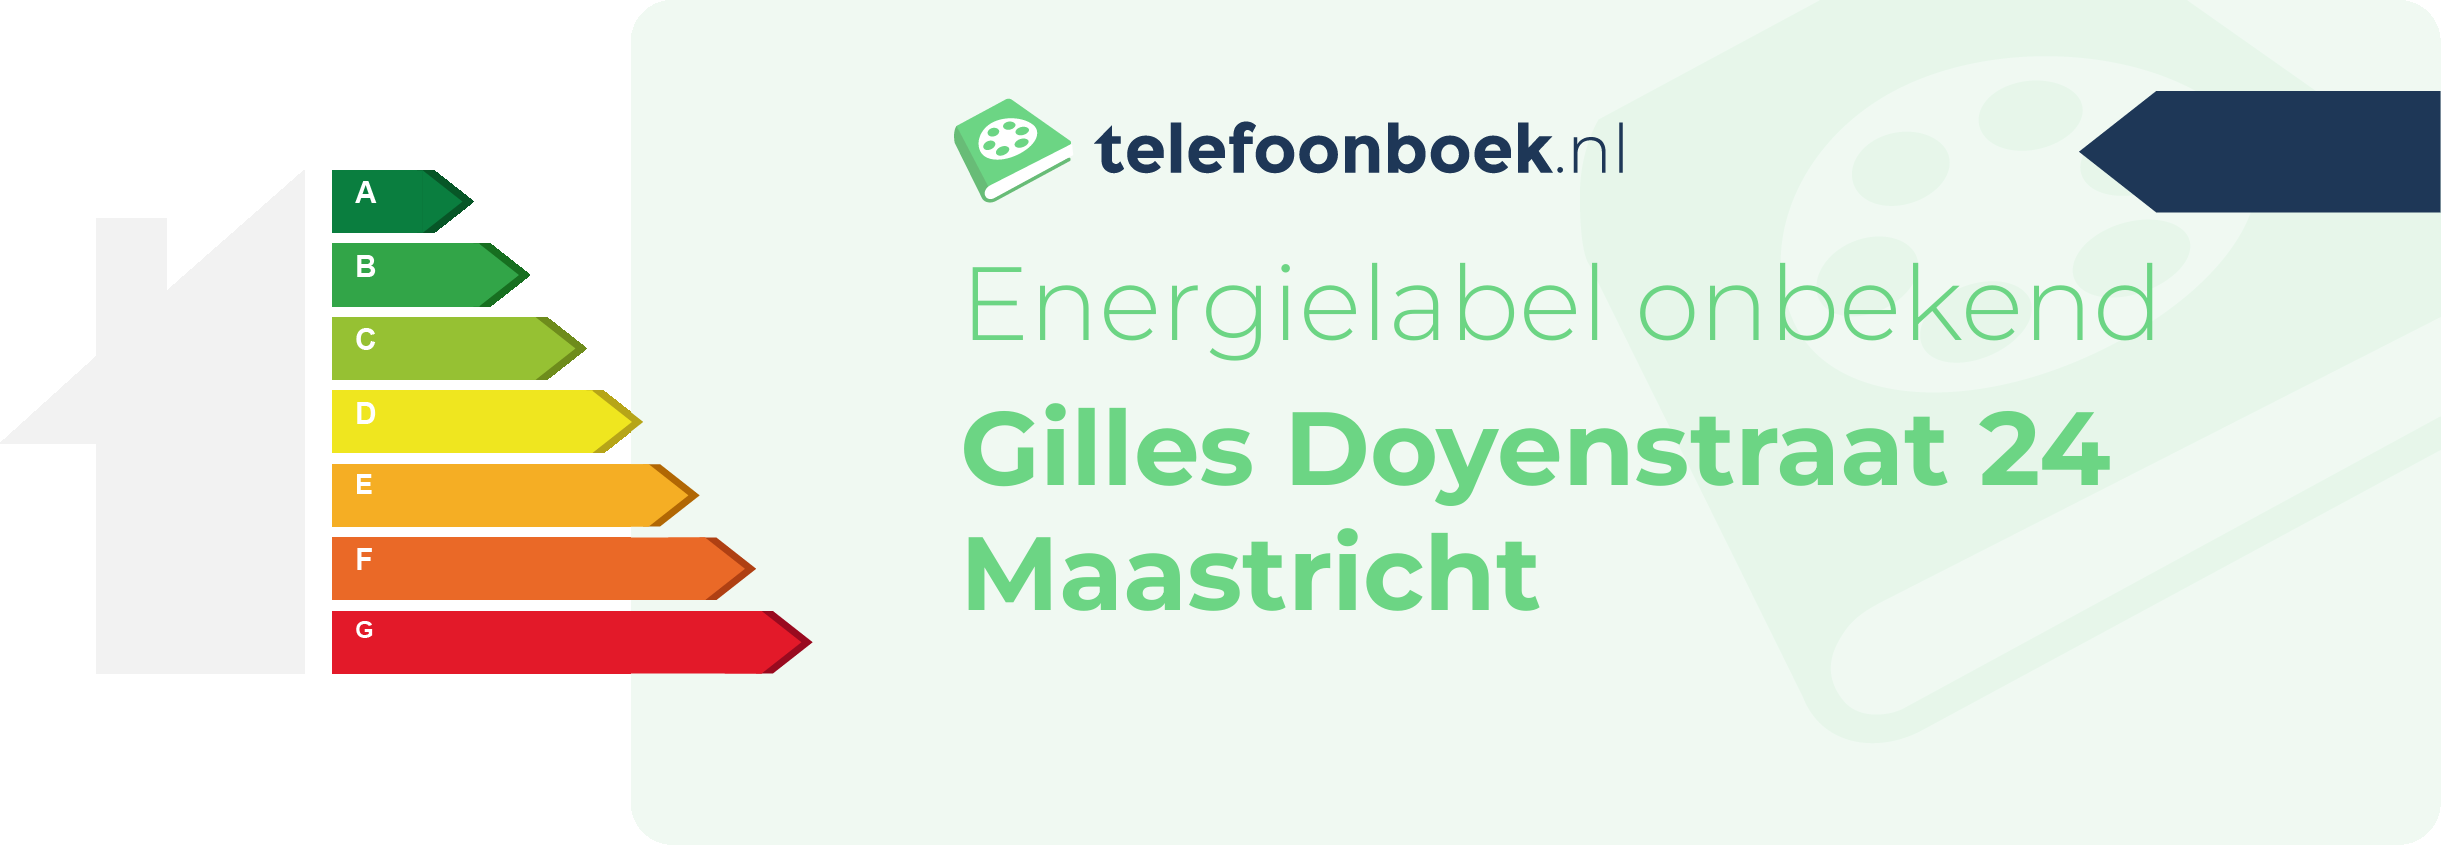 Energielabel Gilles Doyenstraat 24 Maastricht